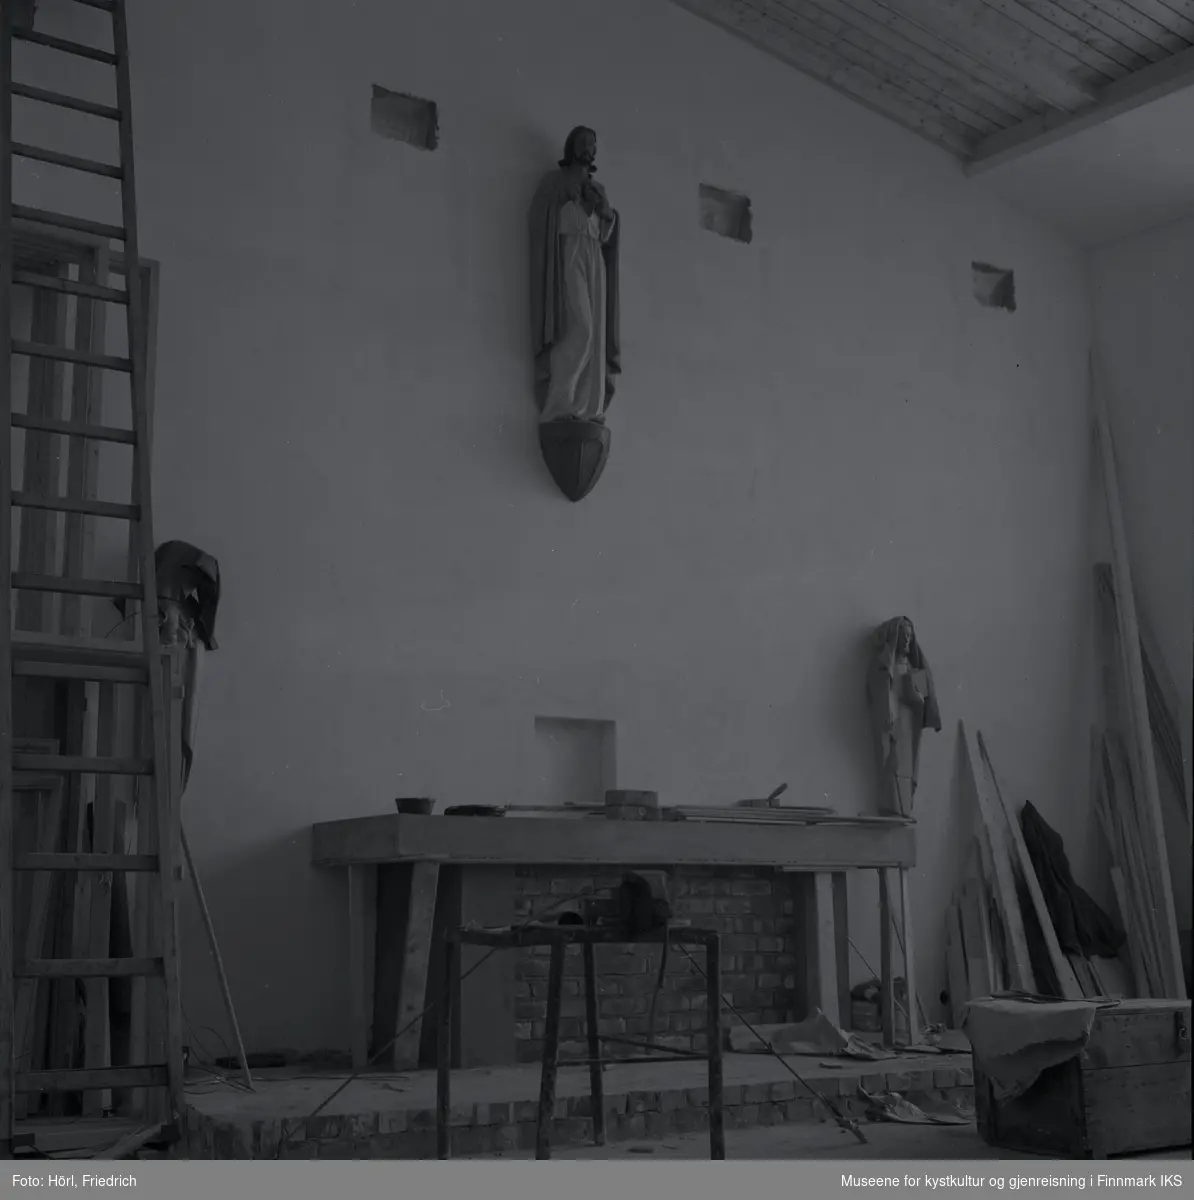 Interiøret av den katolske kirka St. Mikael i Hammerfest bygges i 1958. I motsetning til senere, er det montert en skulptur av Jesus Kristus ovenfor alteret. Senere ble det plassert et krusifiks der. Mosaikken på fronten av alteret, som ble utført av Karl Manninger, er ikke kommet på plass enda. Til venstre for alteret er det montert enn skulptur av Maria med barnet, til høyre vises Josef. Skulpturene, som er skjært av tre, er avdekket med tepper. Til venstre i bilde står en lang stige og til høyre noe mer byggemateriale lent mot veggen.